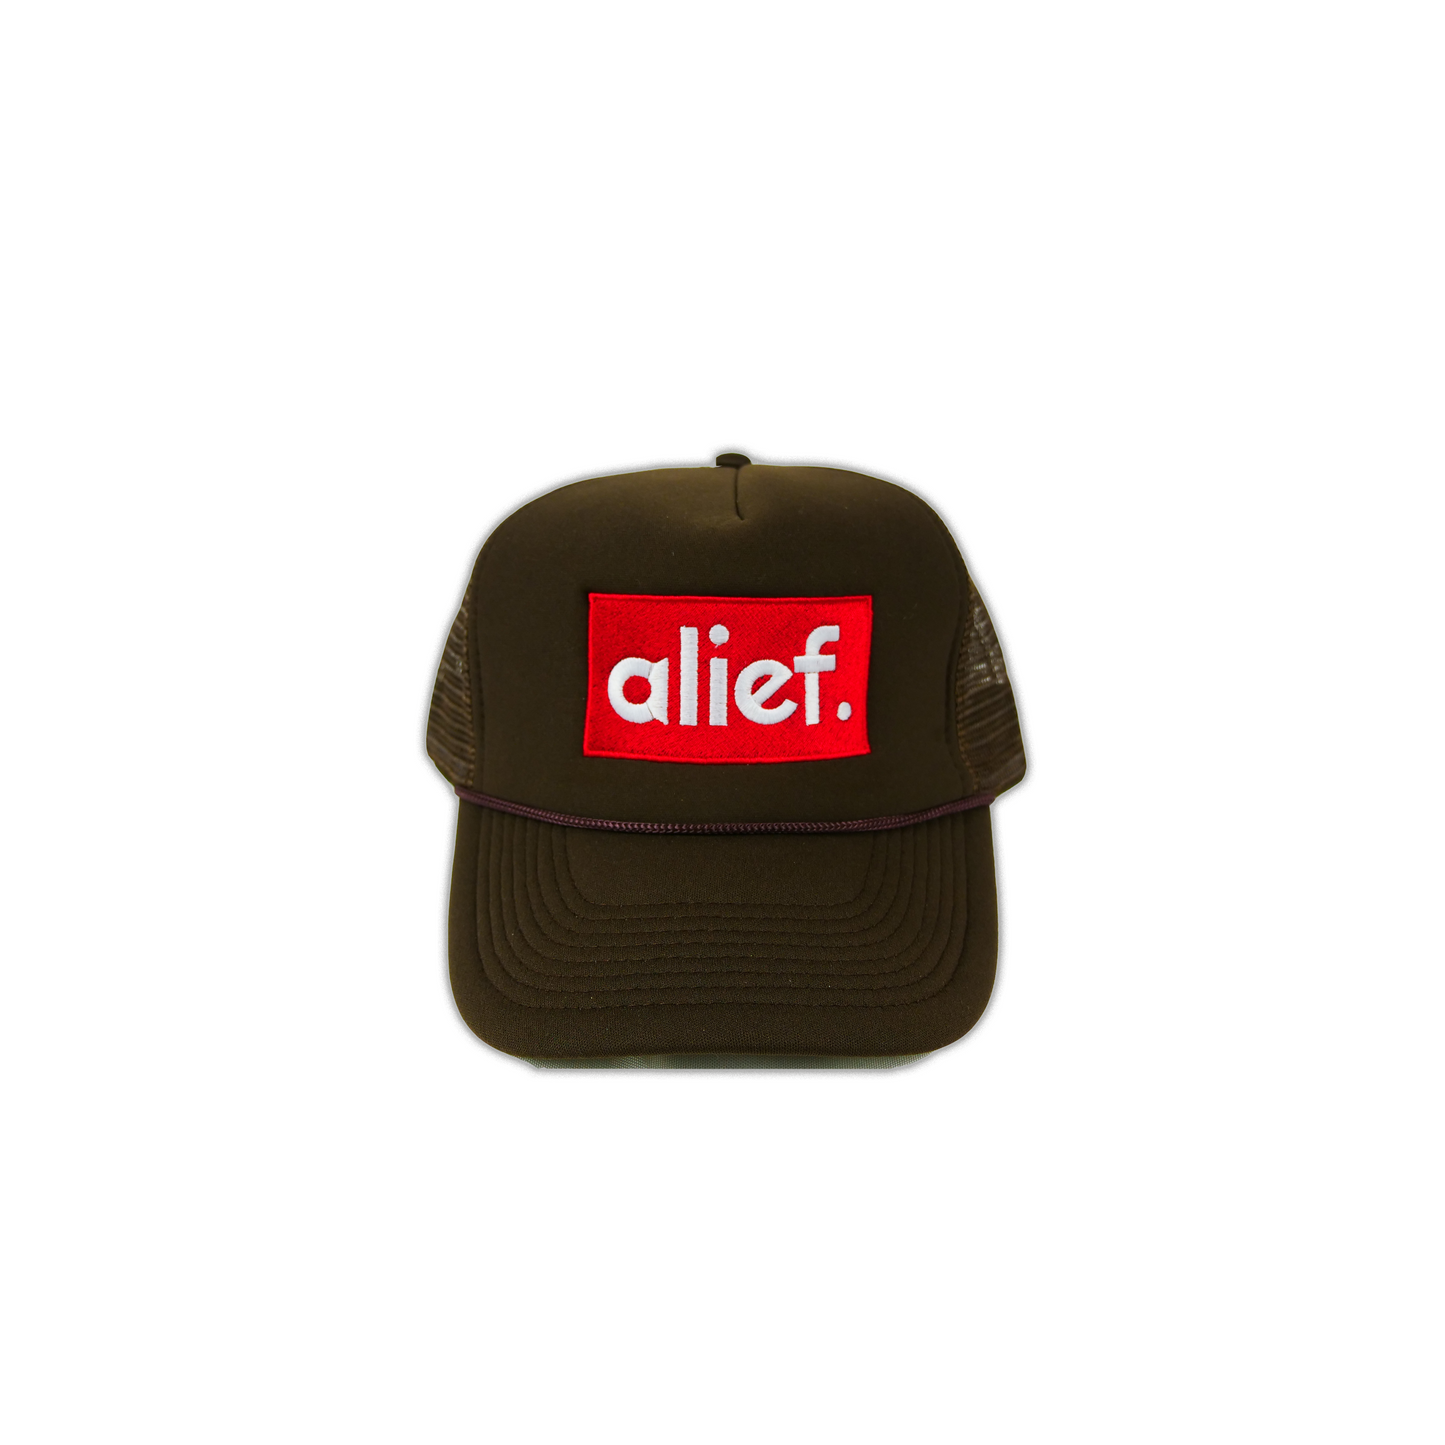 Alief Red Box Trucker Hat - Brown